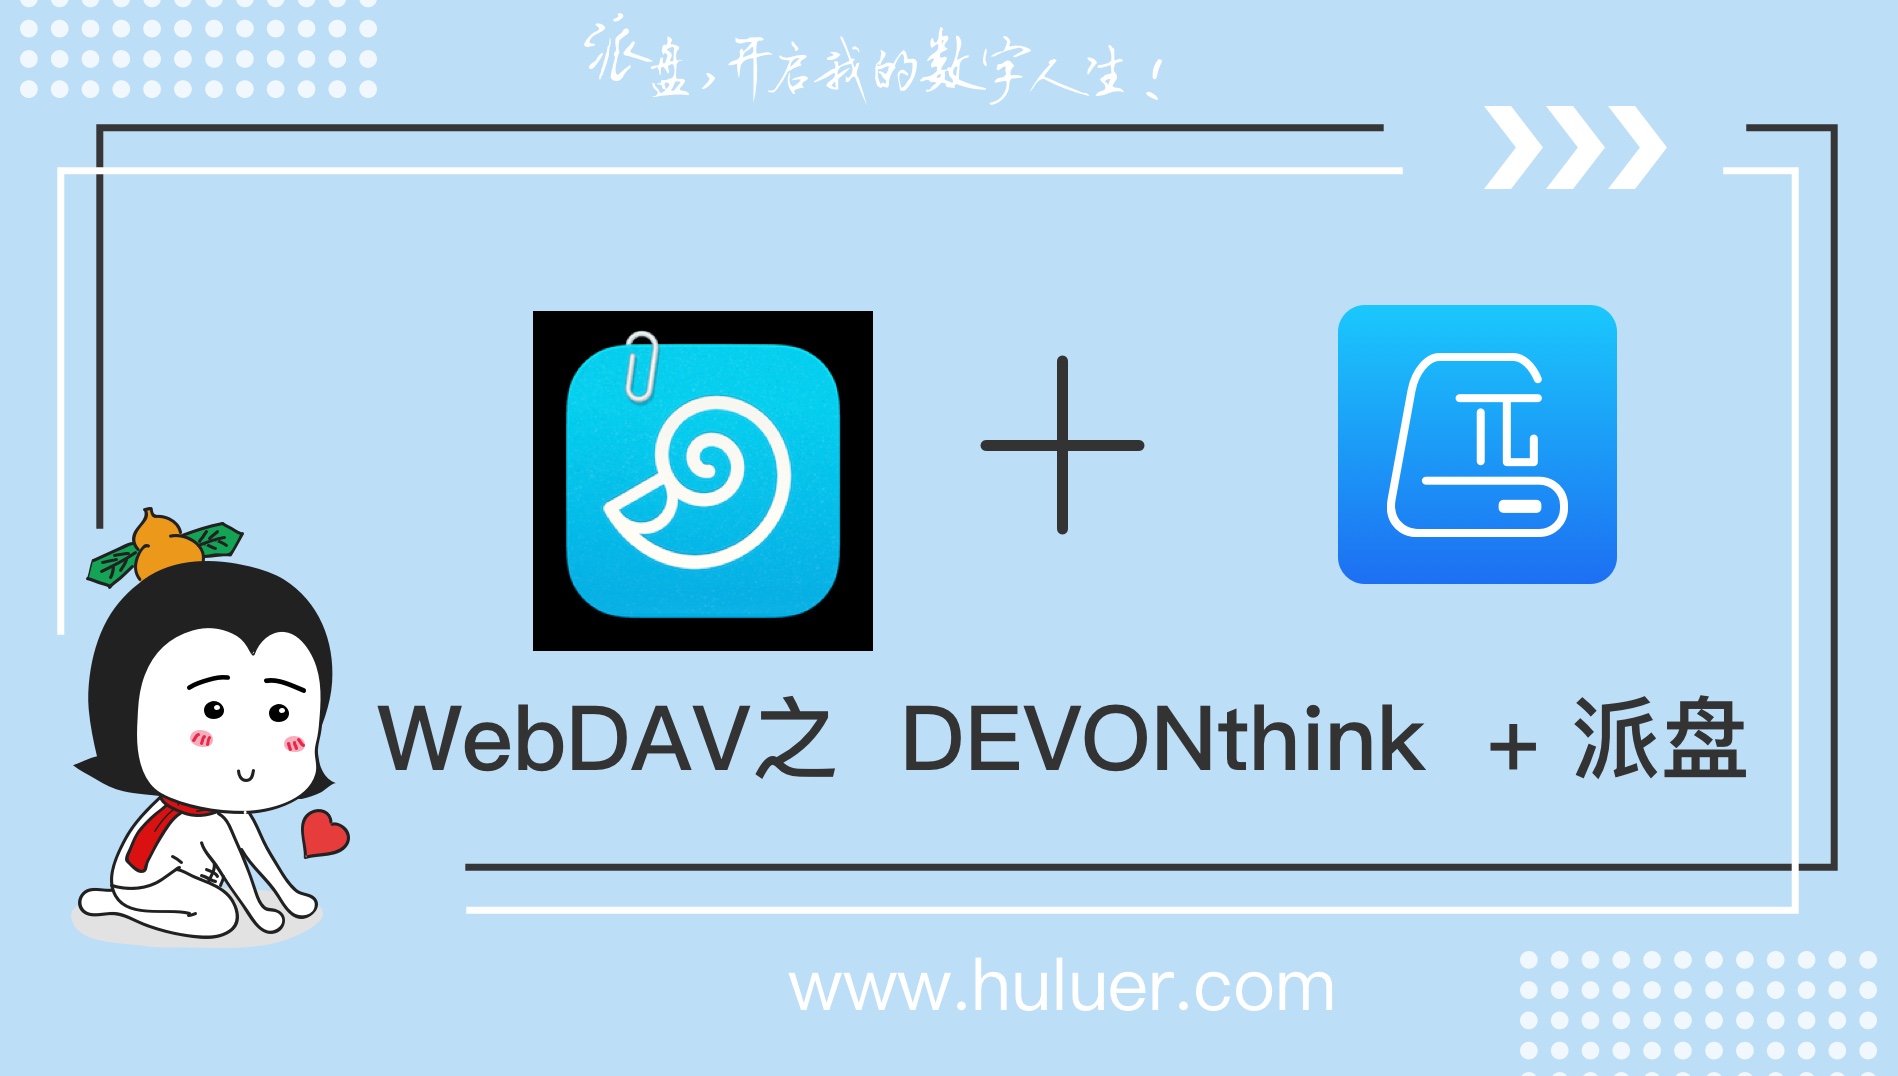 WebDAV之π-Disk派盘 + DEVONthink